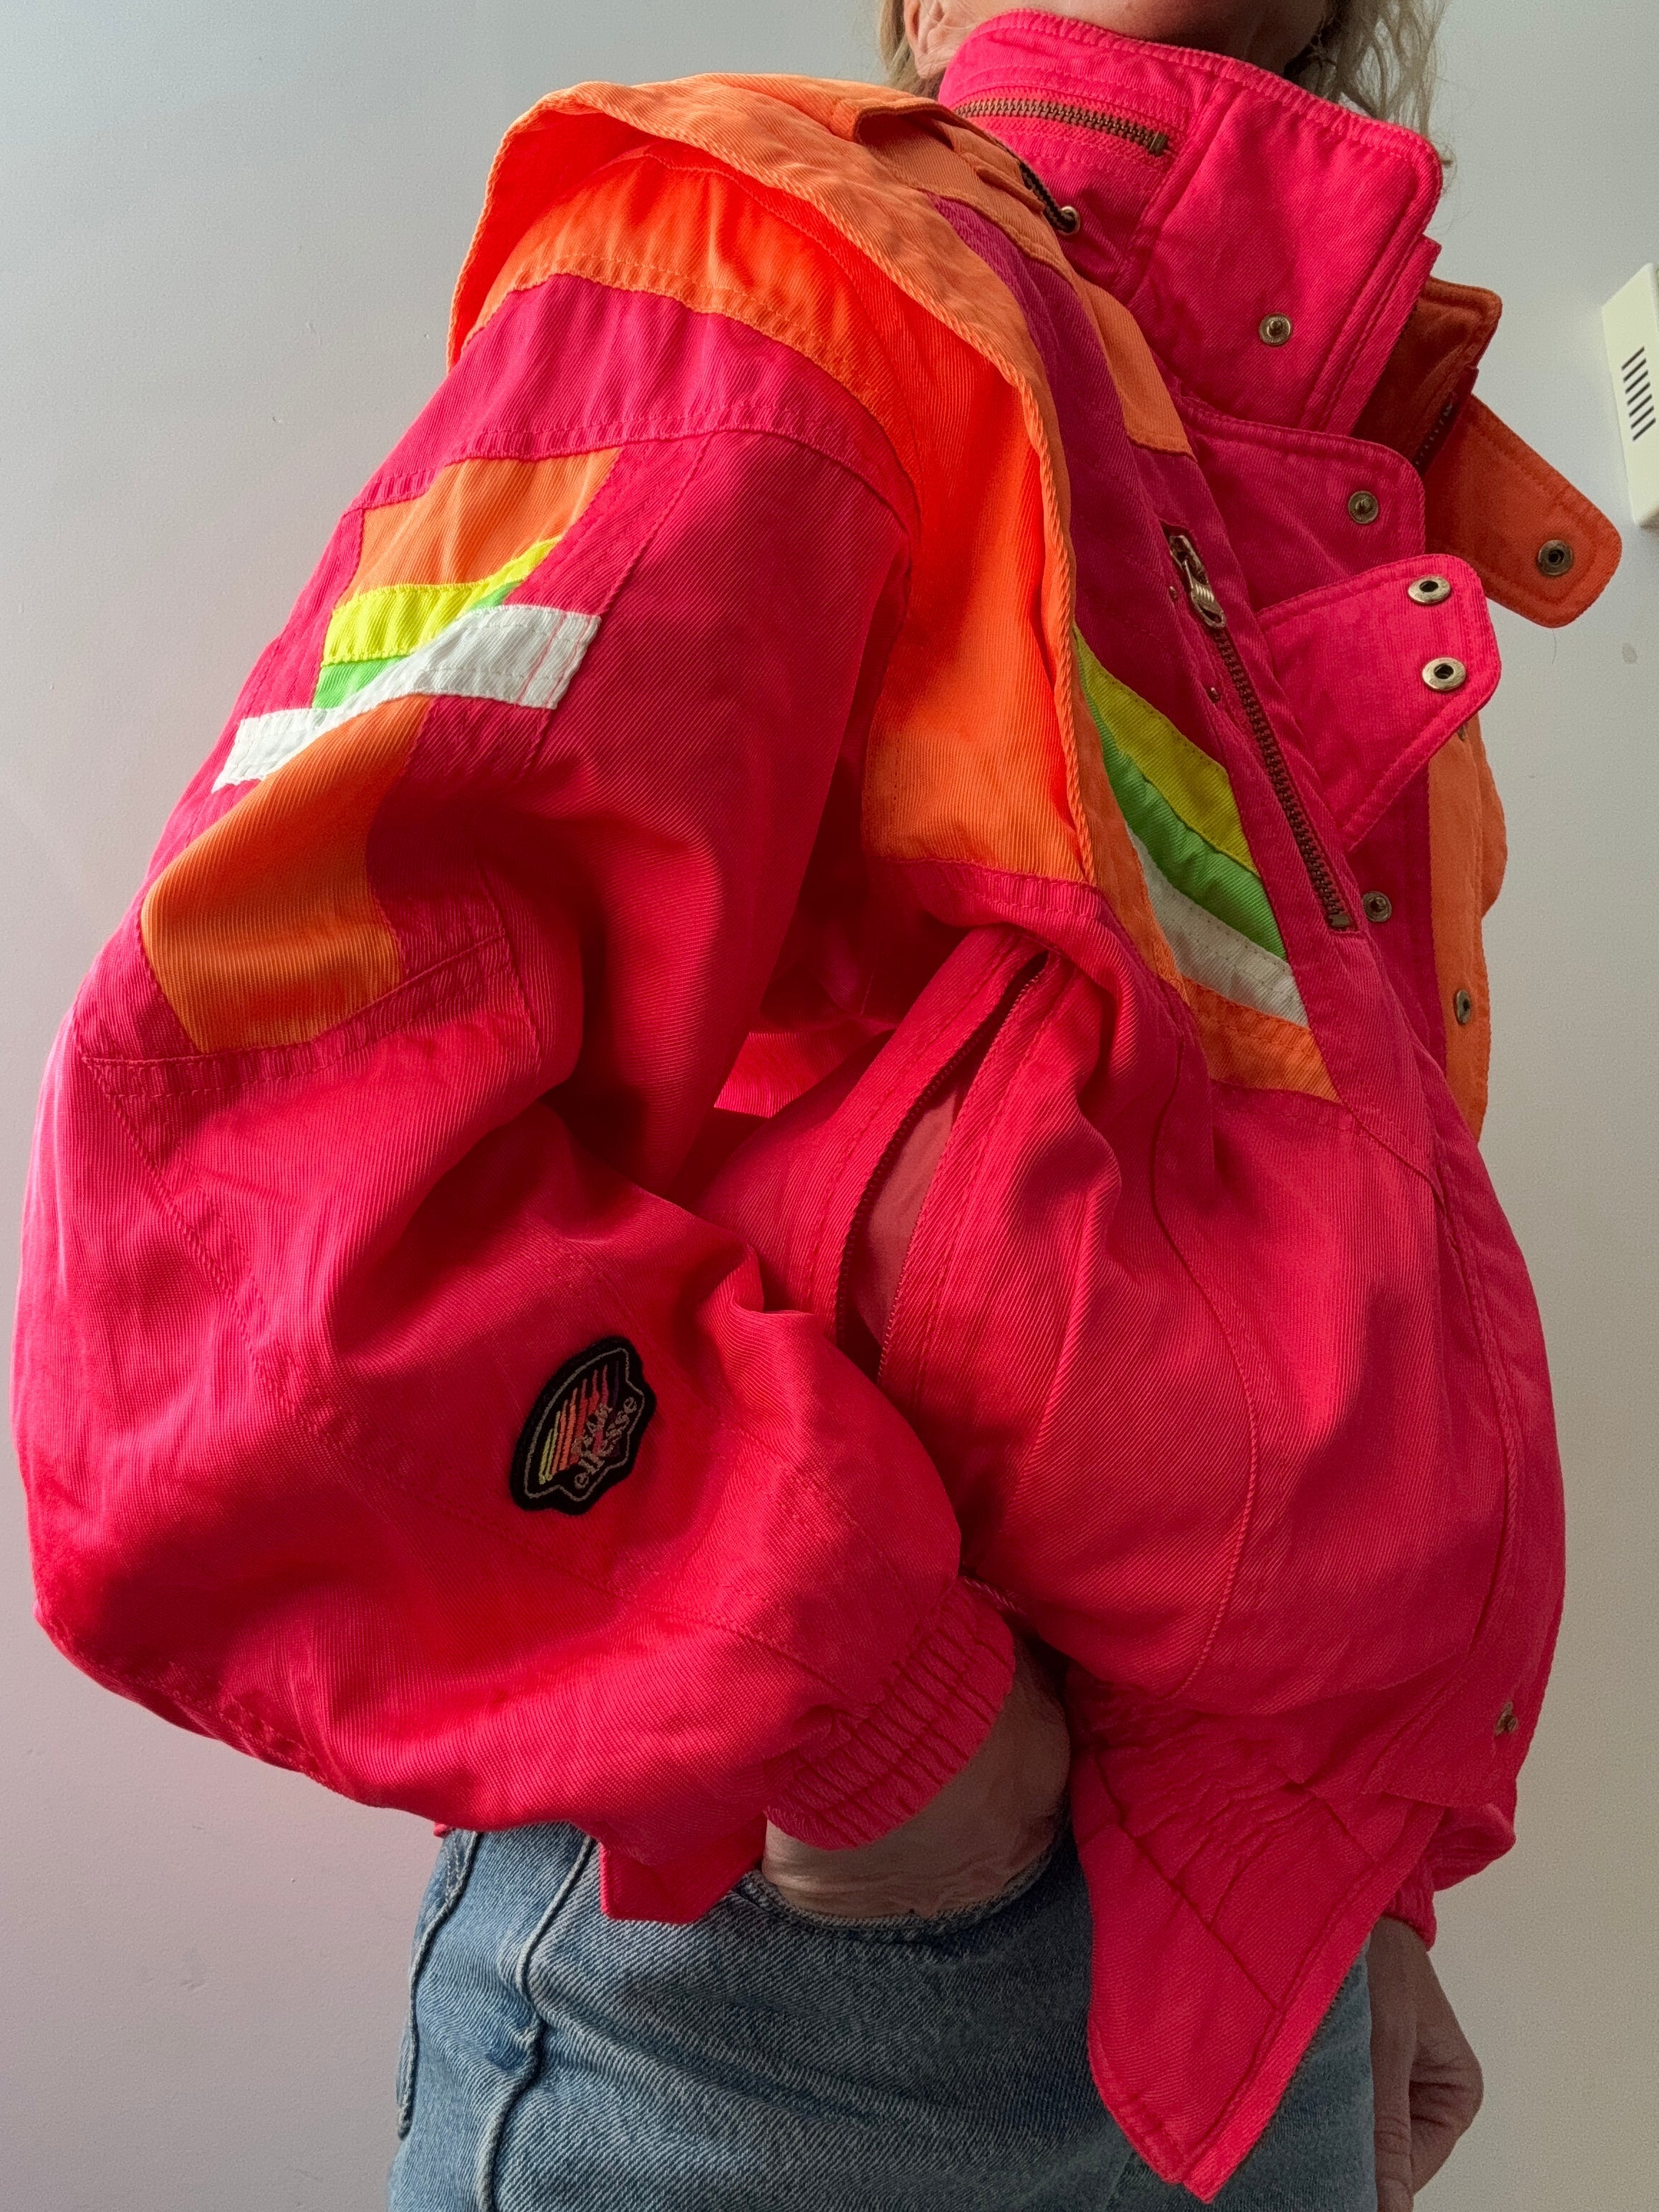 Future Nomads Jackets Medium Vintage Italian Ski Jacket